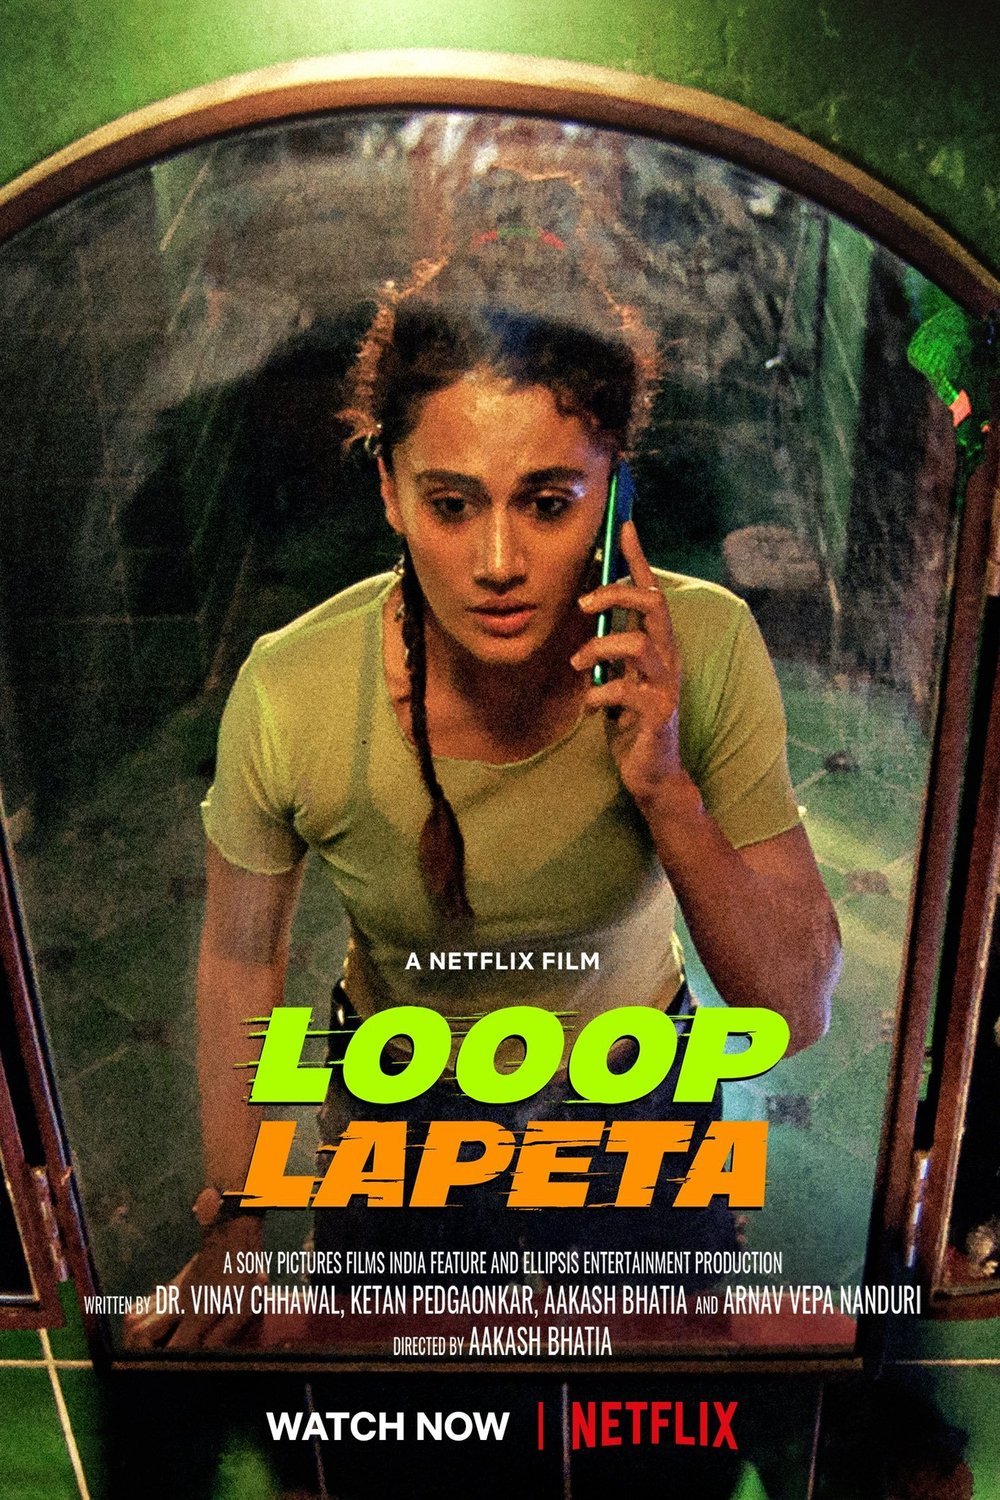 Hindi poster of the movie Looop Lapeta